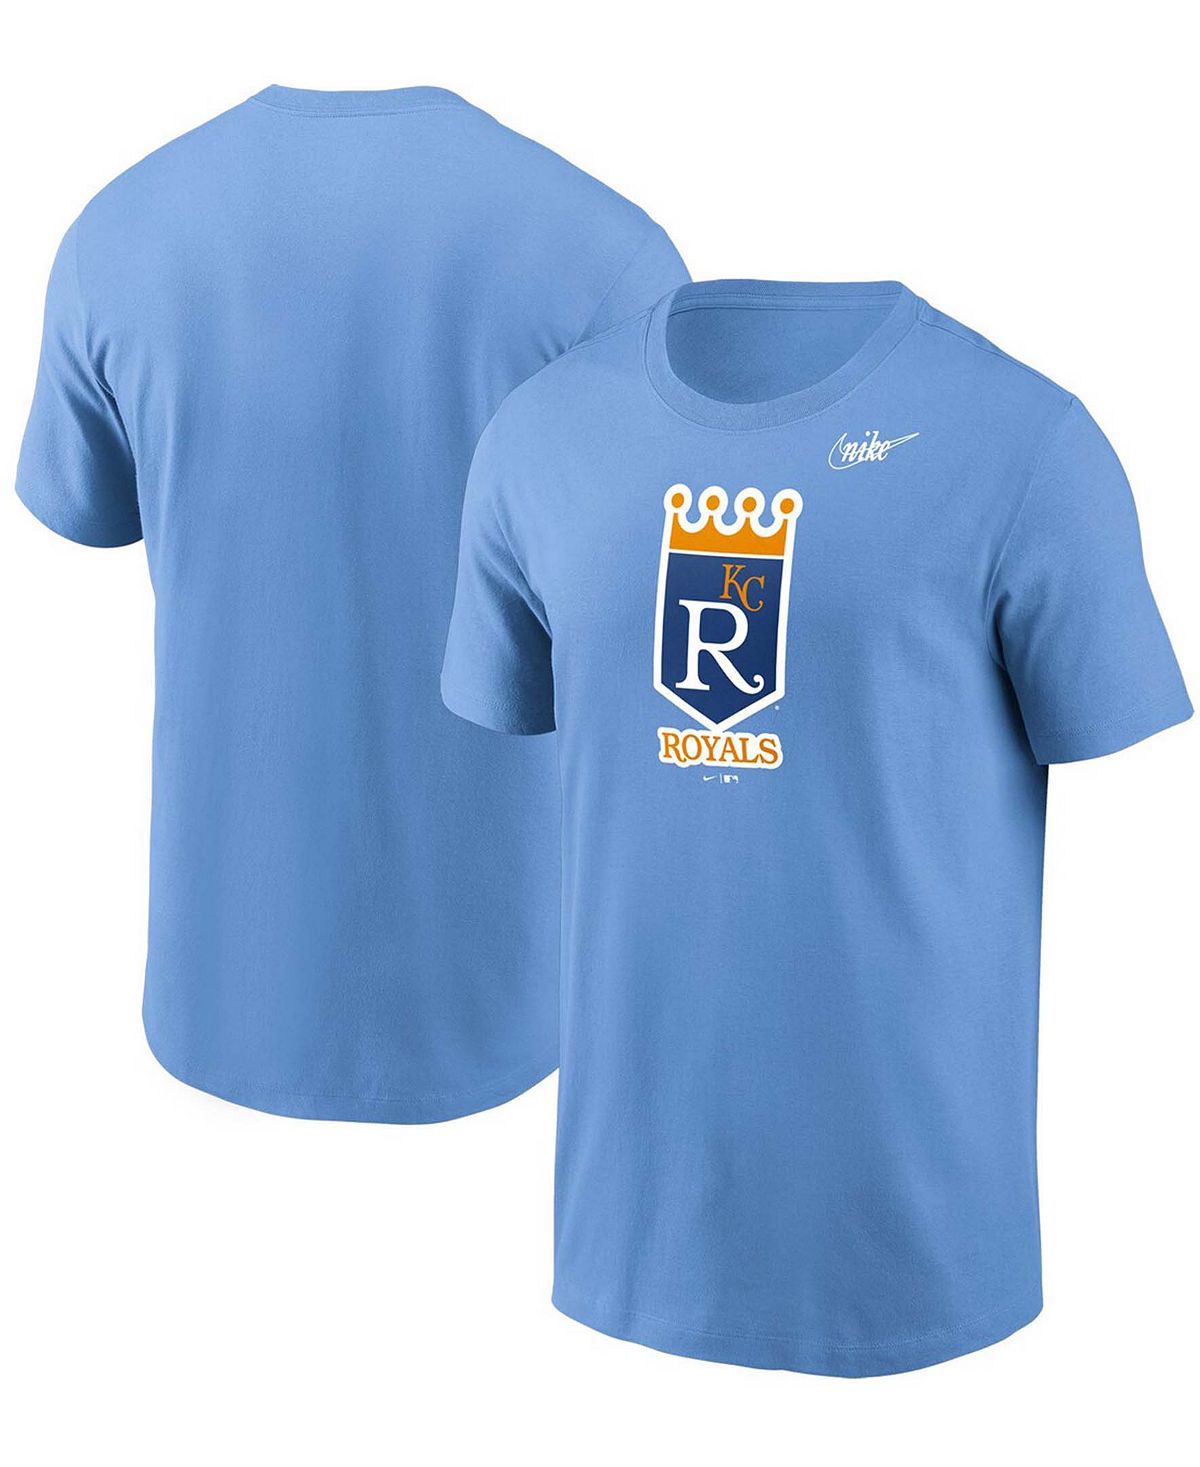 Мужская голубая футболка с логотипом kansas city royals cooperstown collection Nike, светло-синий